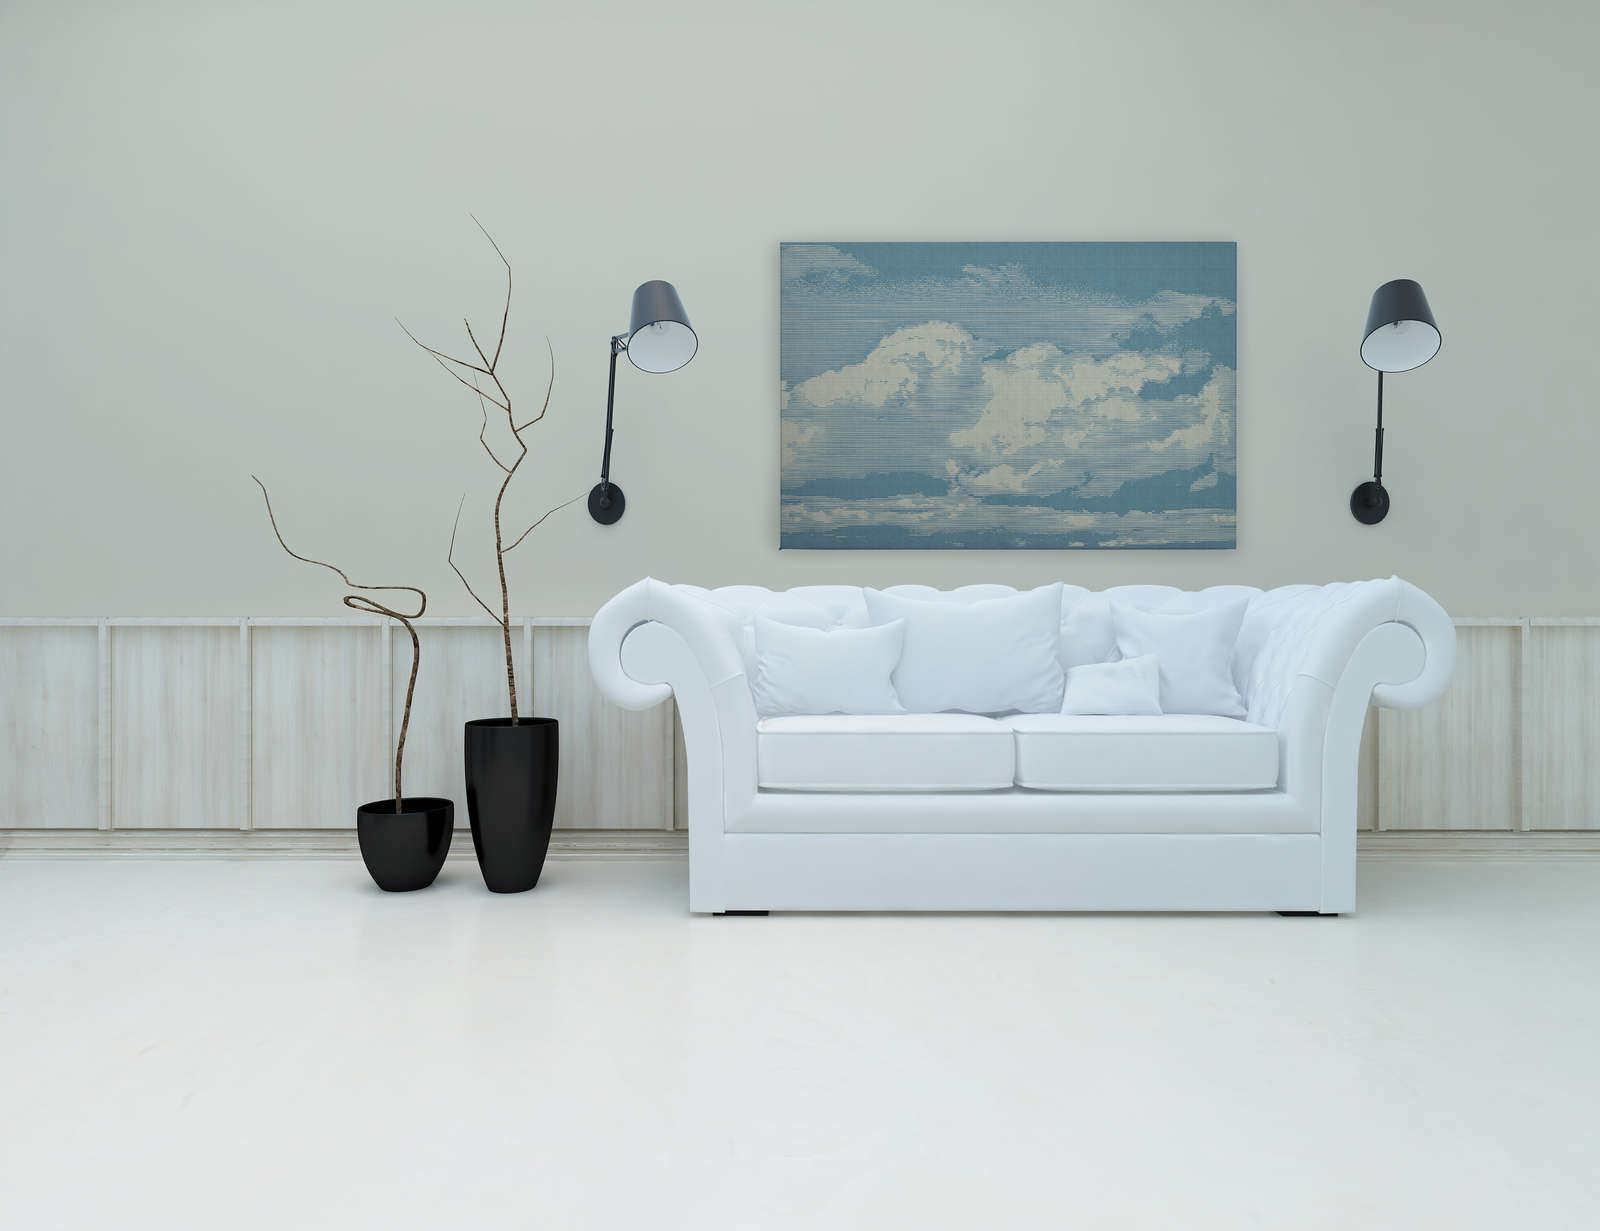             Clouds 1 - Hemels canvas schilderij met wolkenmotief in natuurlijke linnenlook - 1.20 m x 0.80 m
        